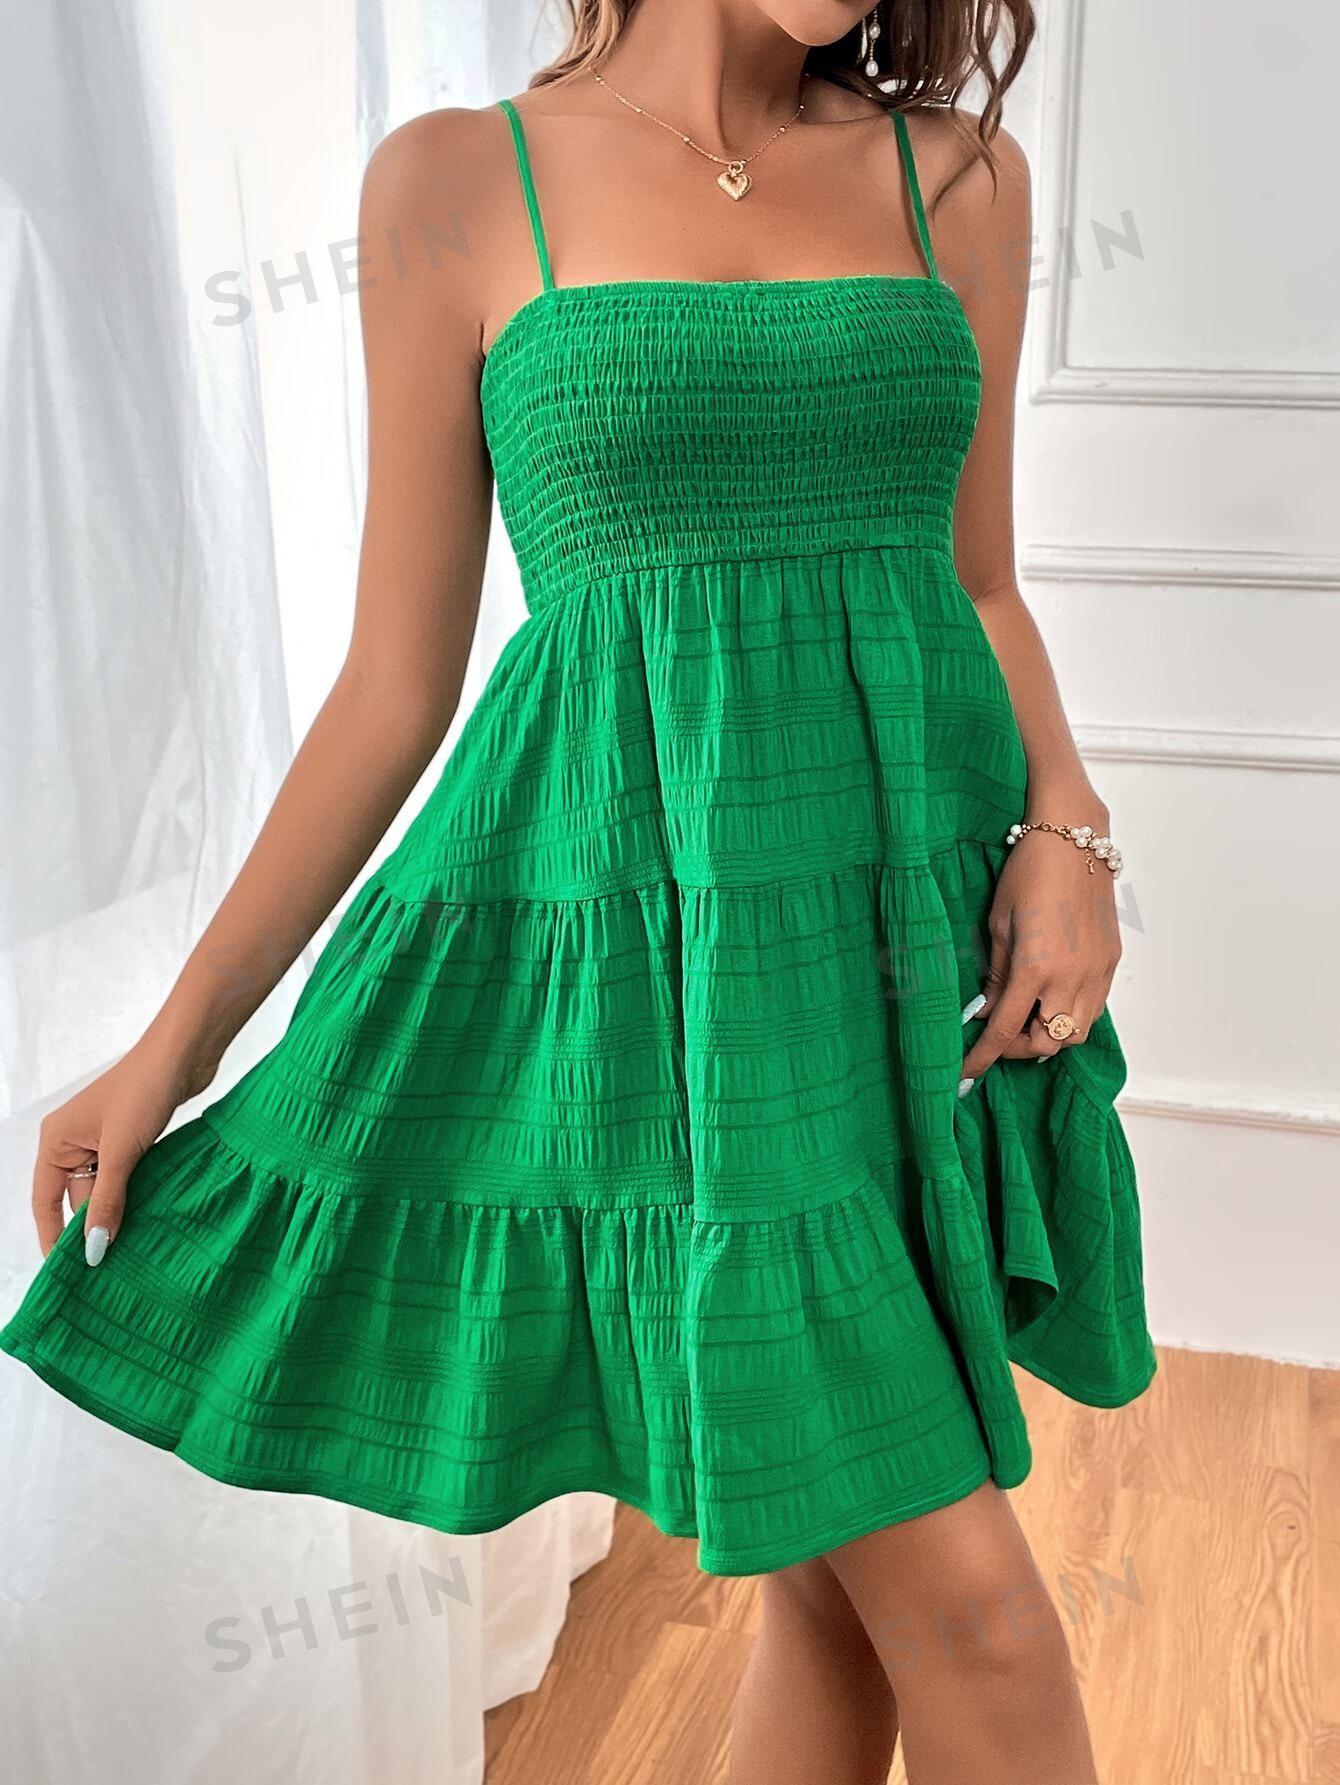 SHEIN WYWH Женское однотонное платье на тонких бретельках с оборками и подолом, зеленый